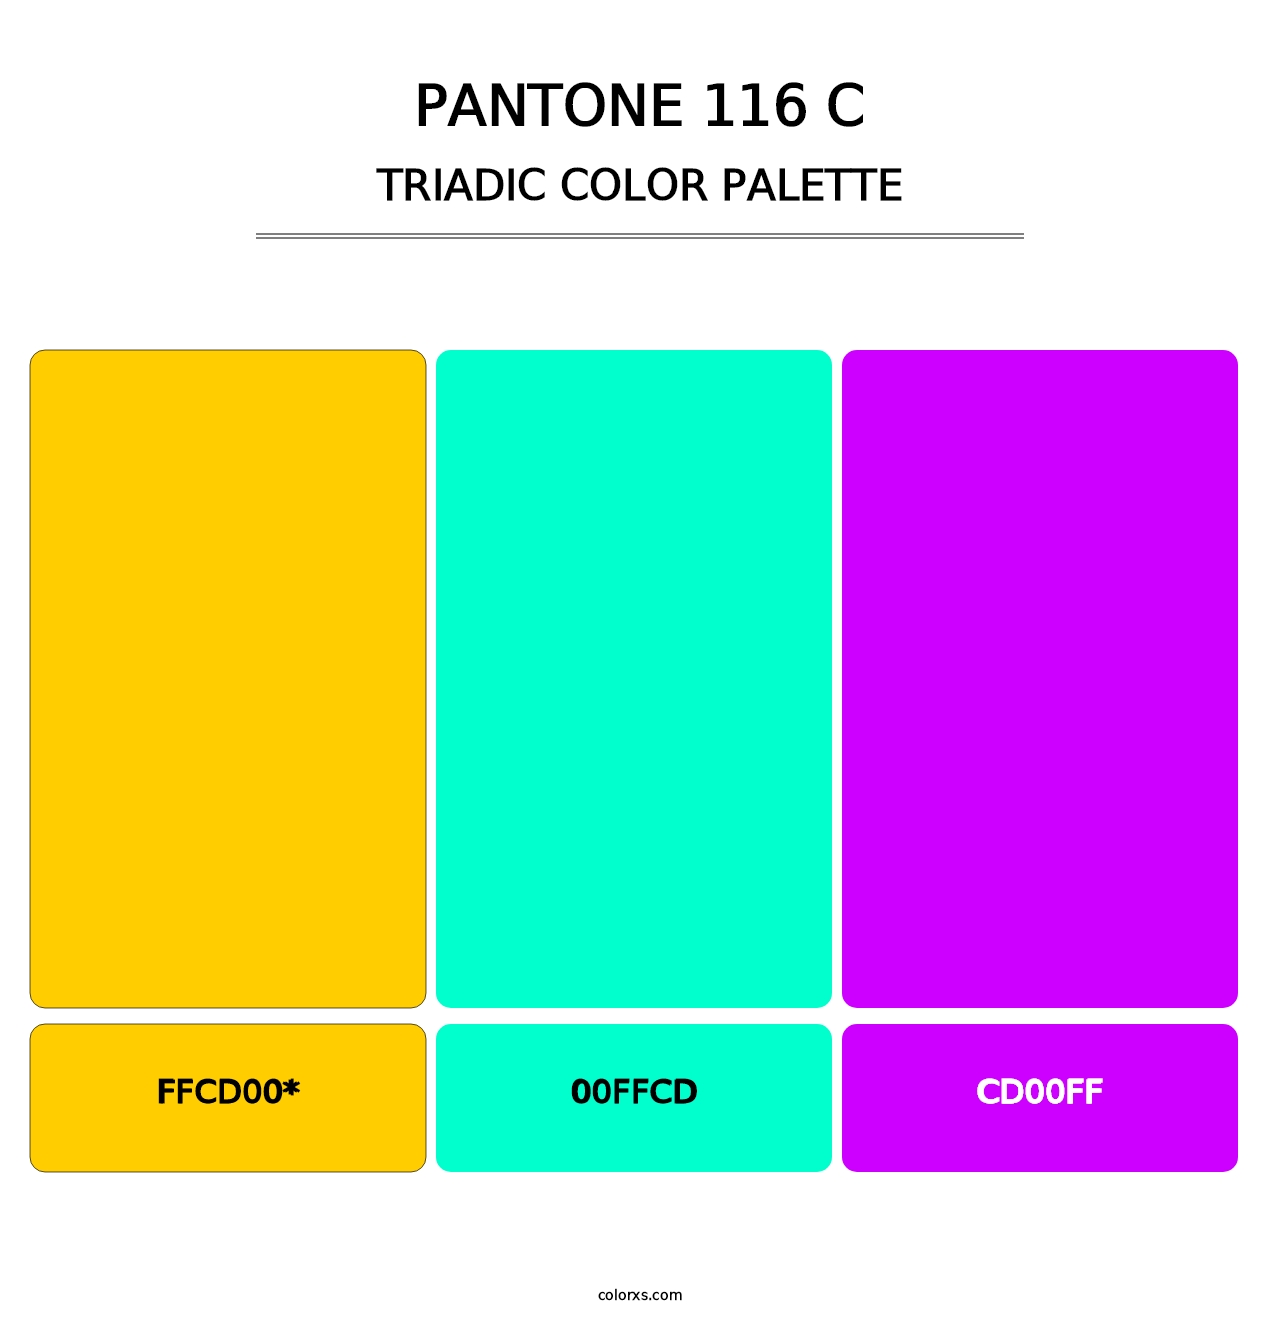 PANTONE 116 C - Triadic Color Palette